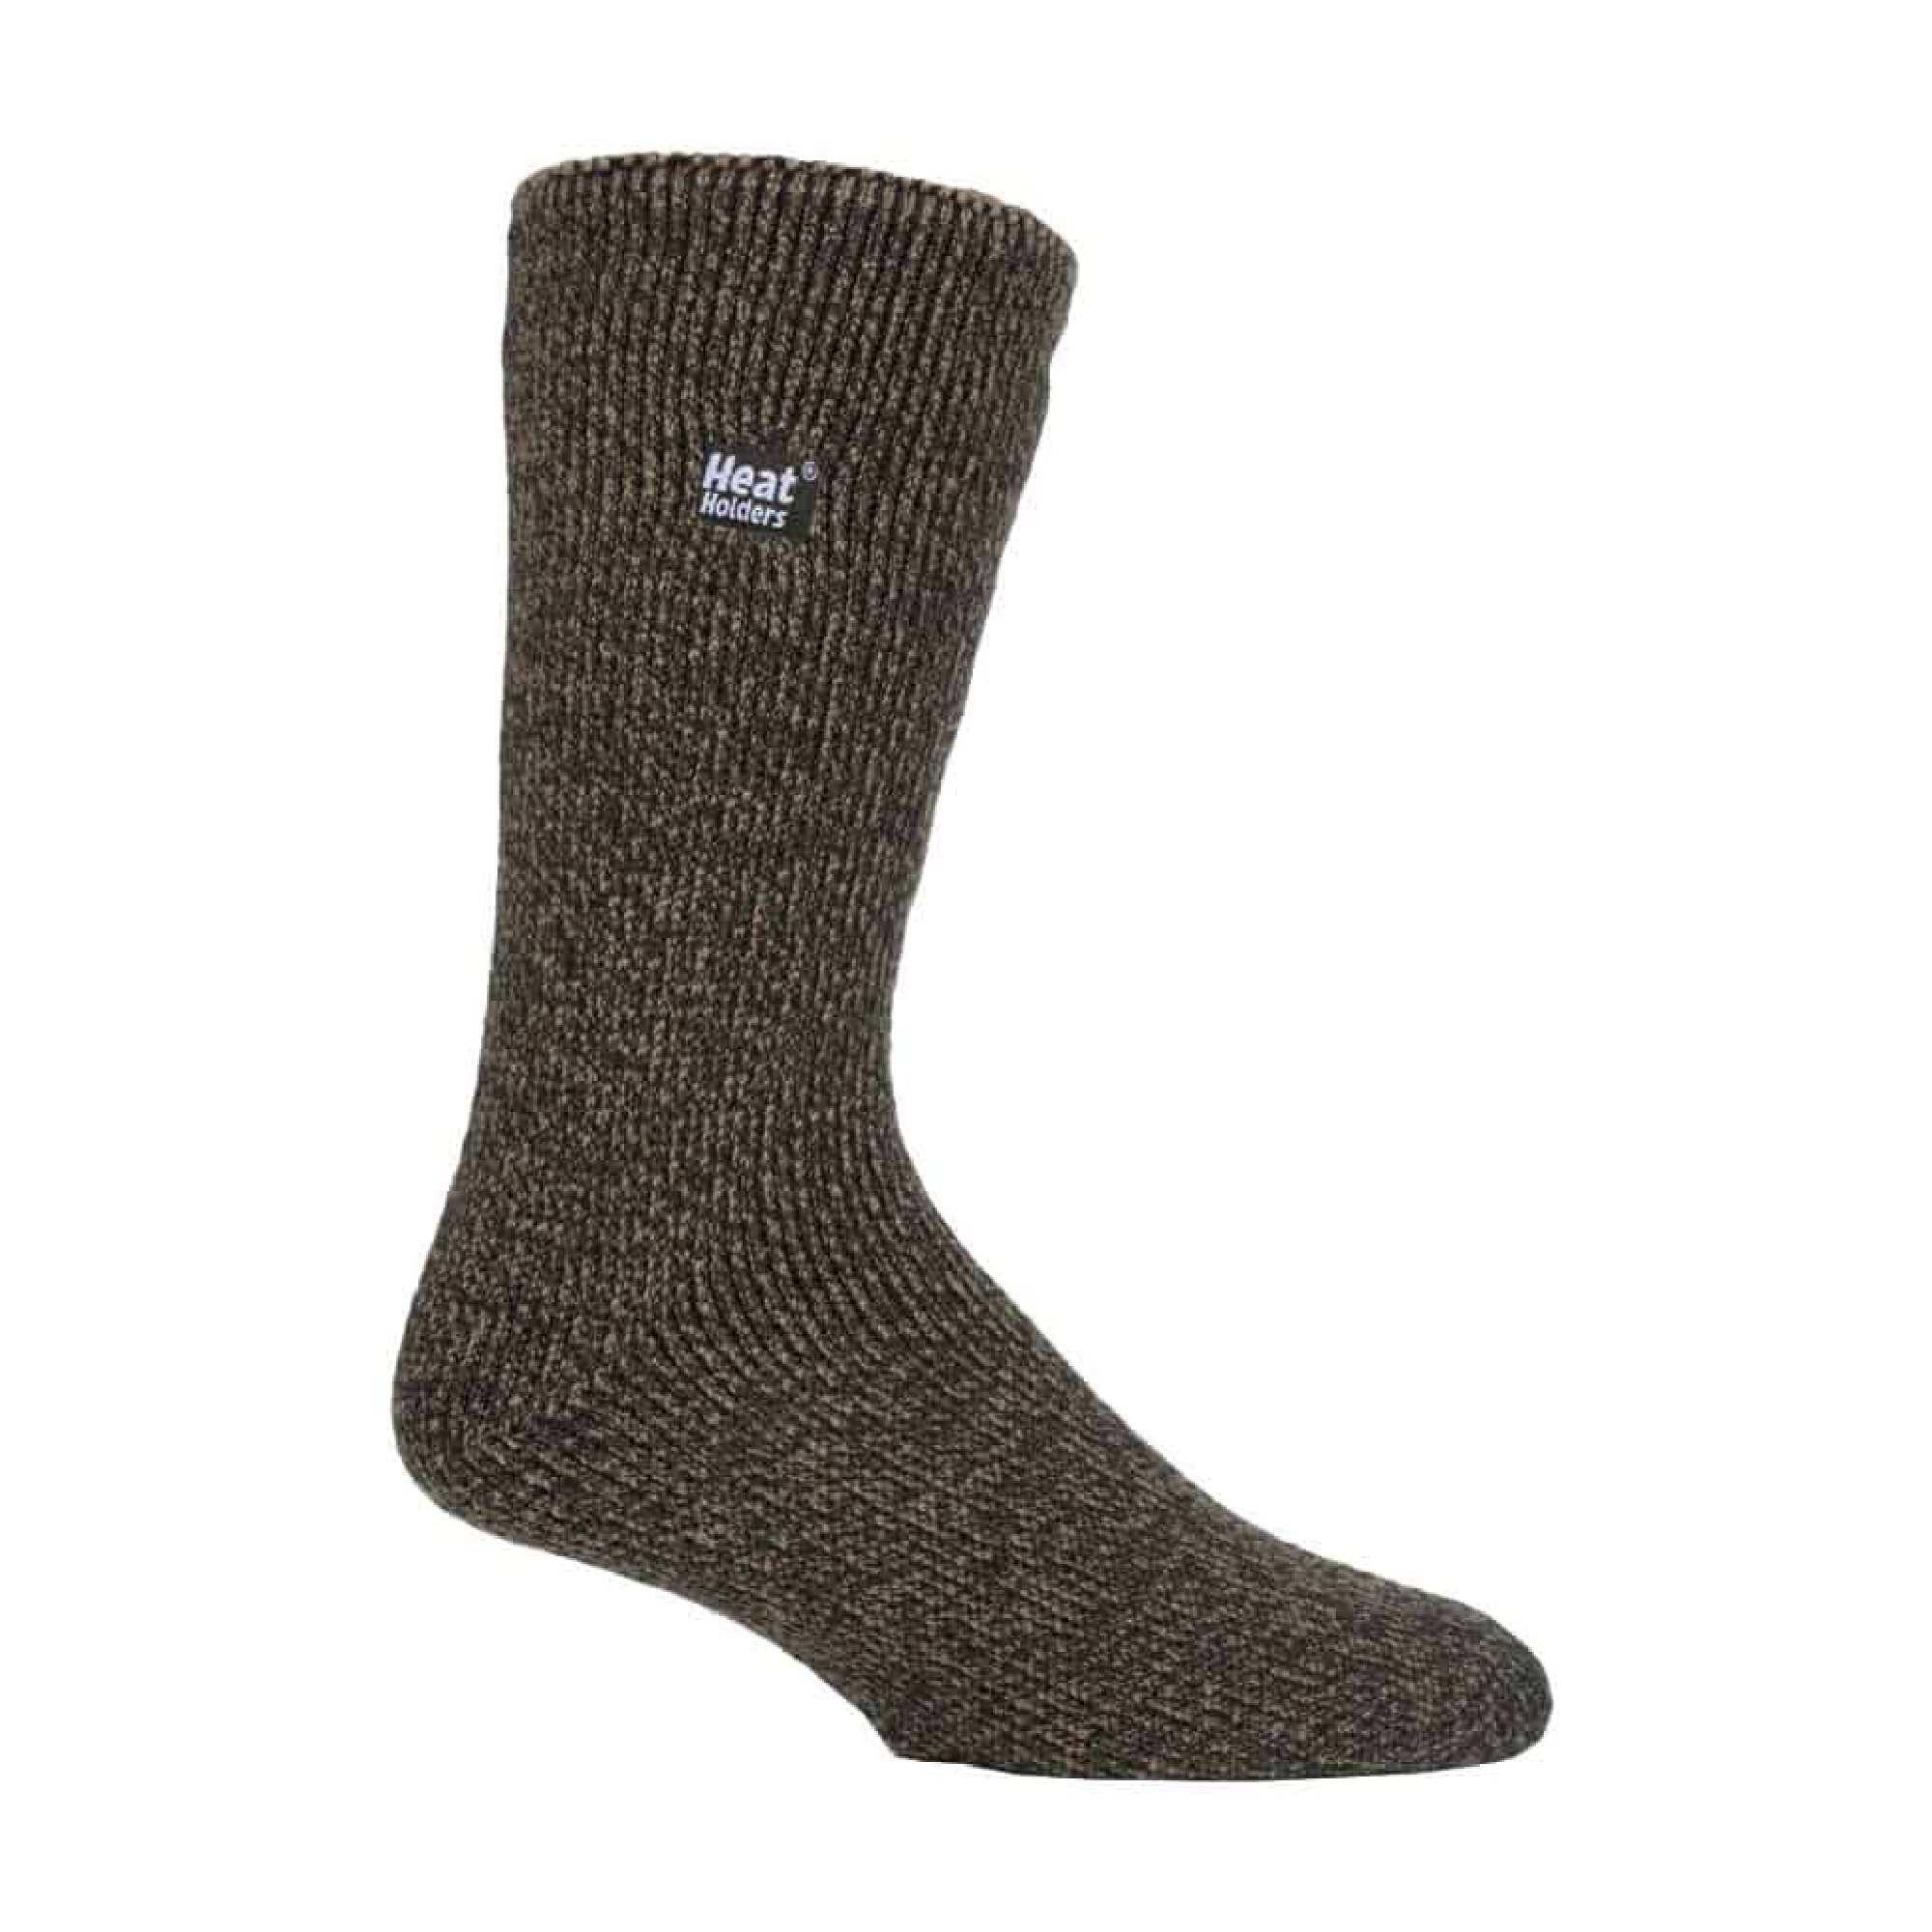 HEAT HOLDERS Mens Winter Merino Wool Thermal Socks with Reinforced Heel and Toe